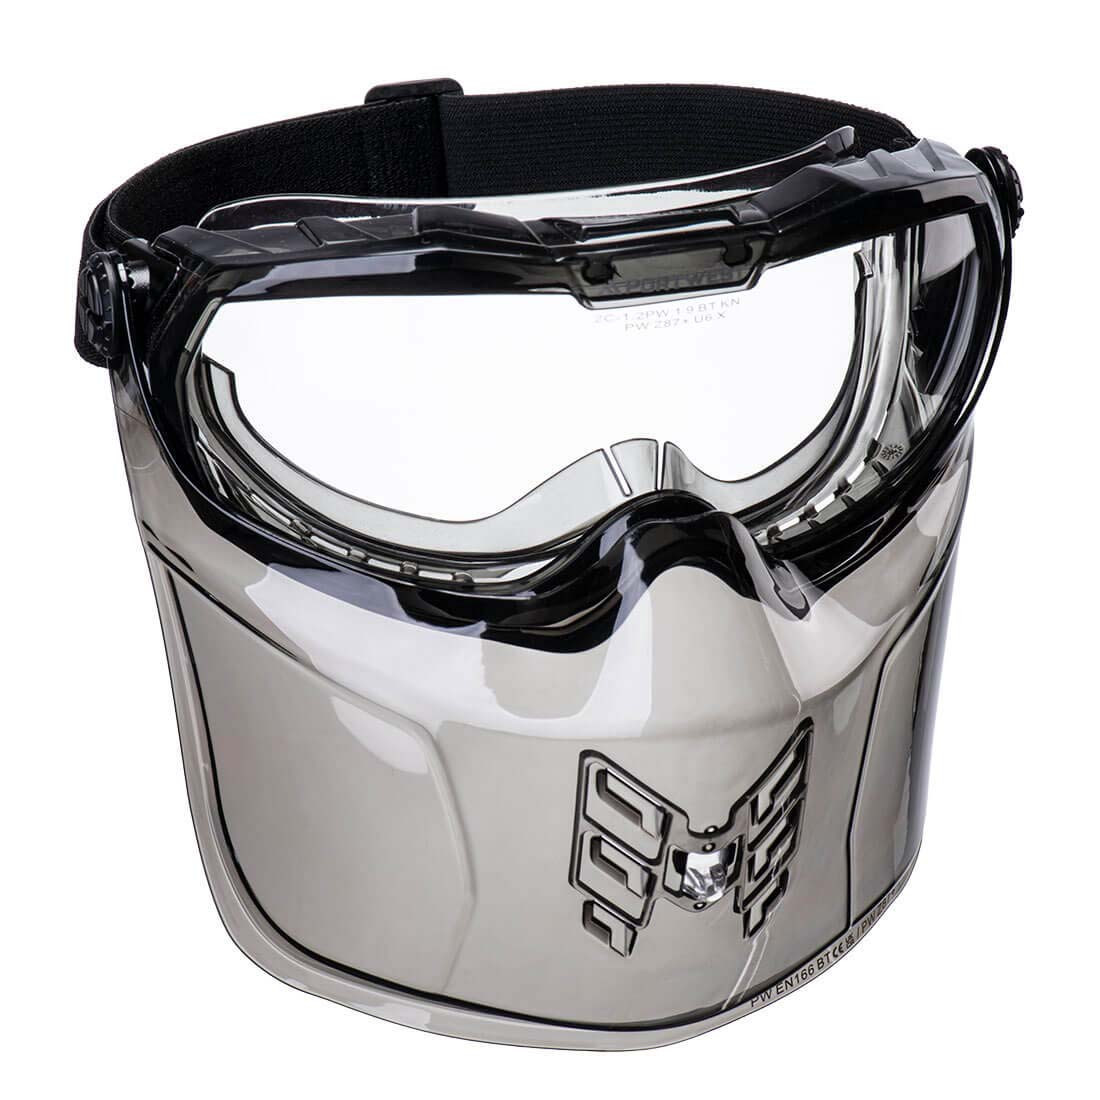 Masque de protection ultra-protecteur - Les équipements de protection individuelle